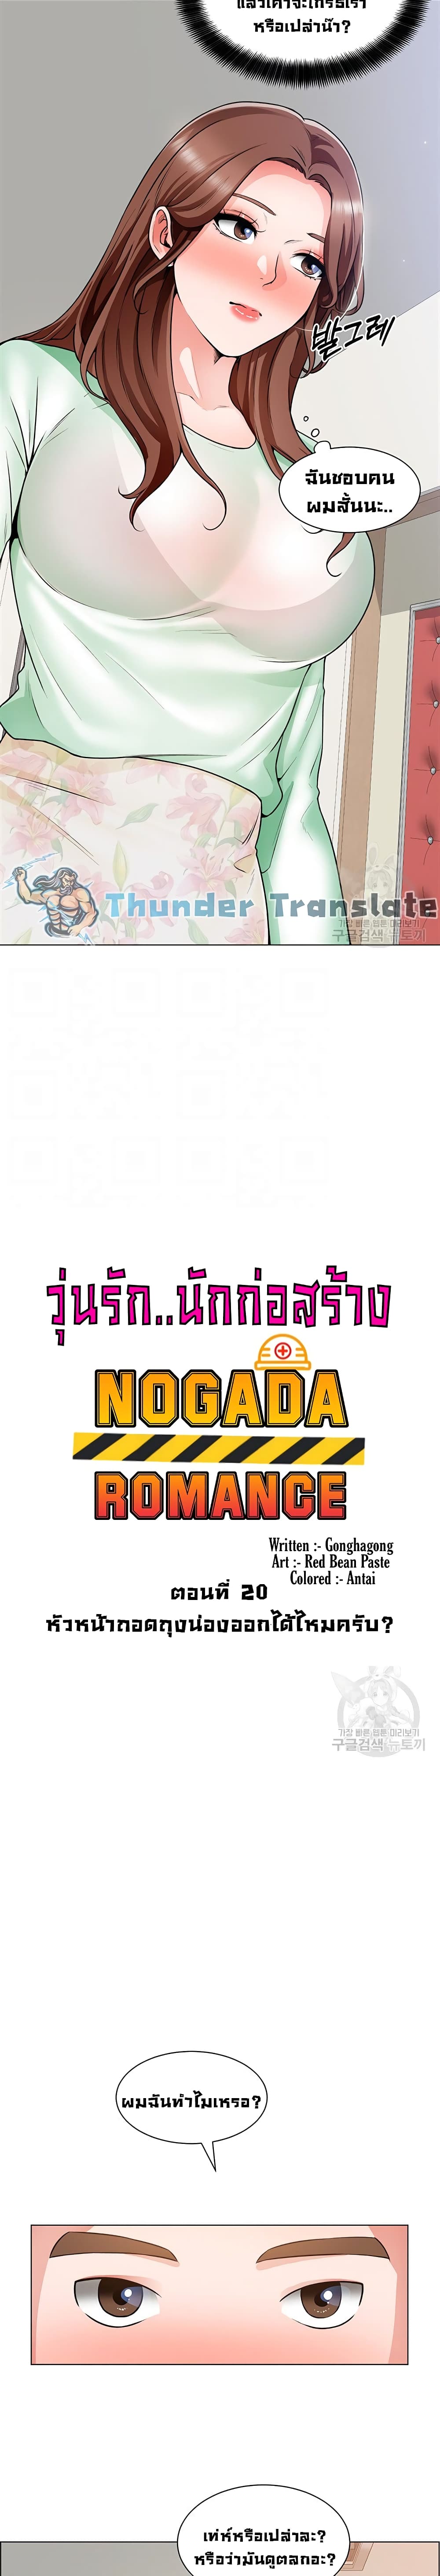 Nogada Romance20 (4)